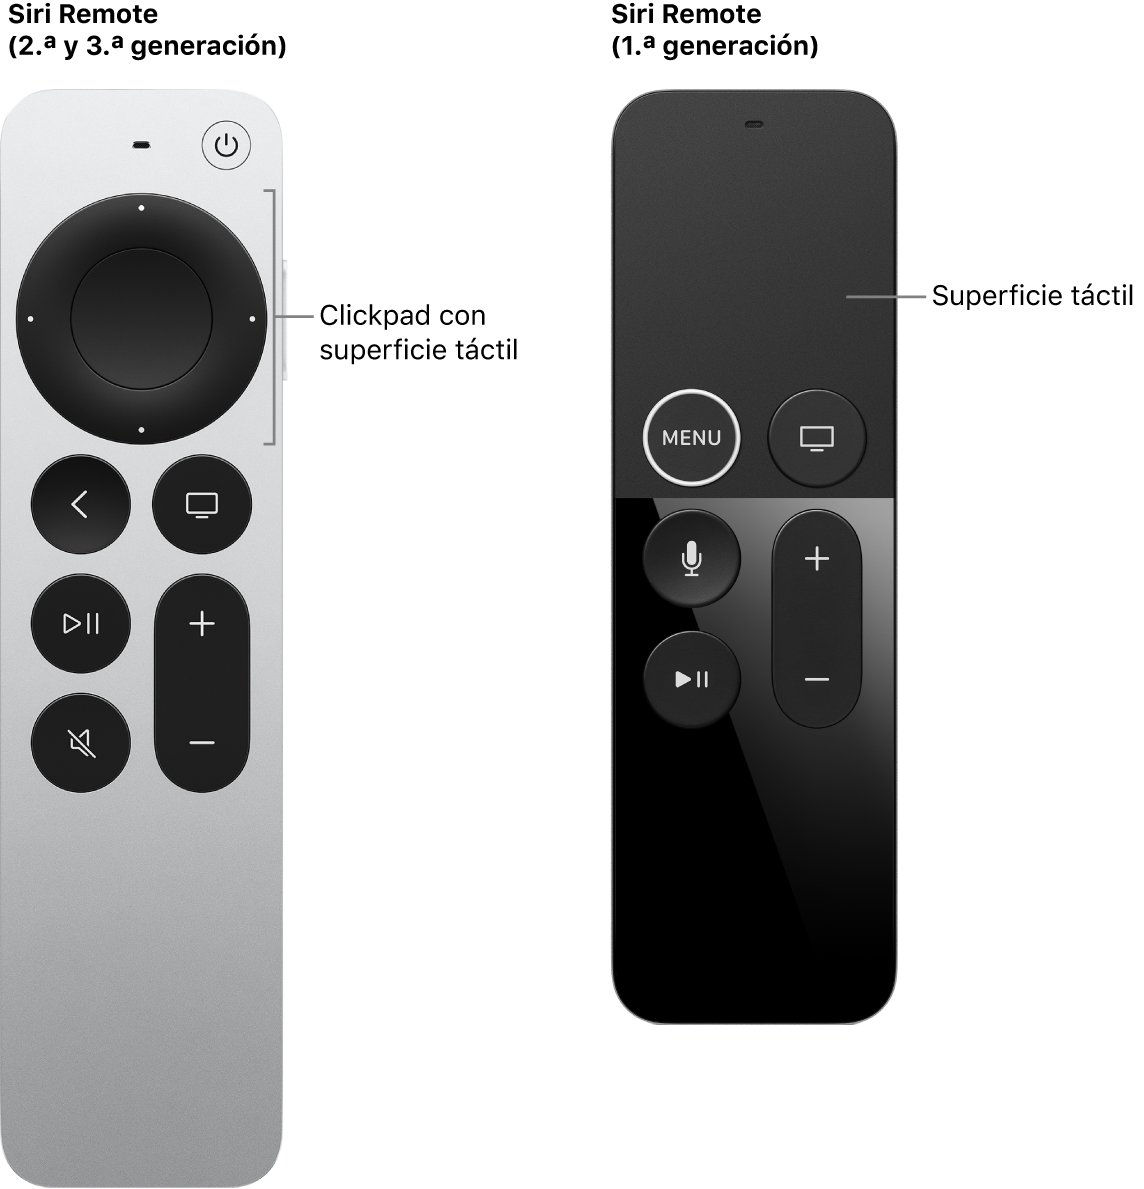 Siri Remote (2.ª y 3.ª generación) con clickpad y Siri Remote (1.ª generación) con superficie táctil.